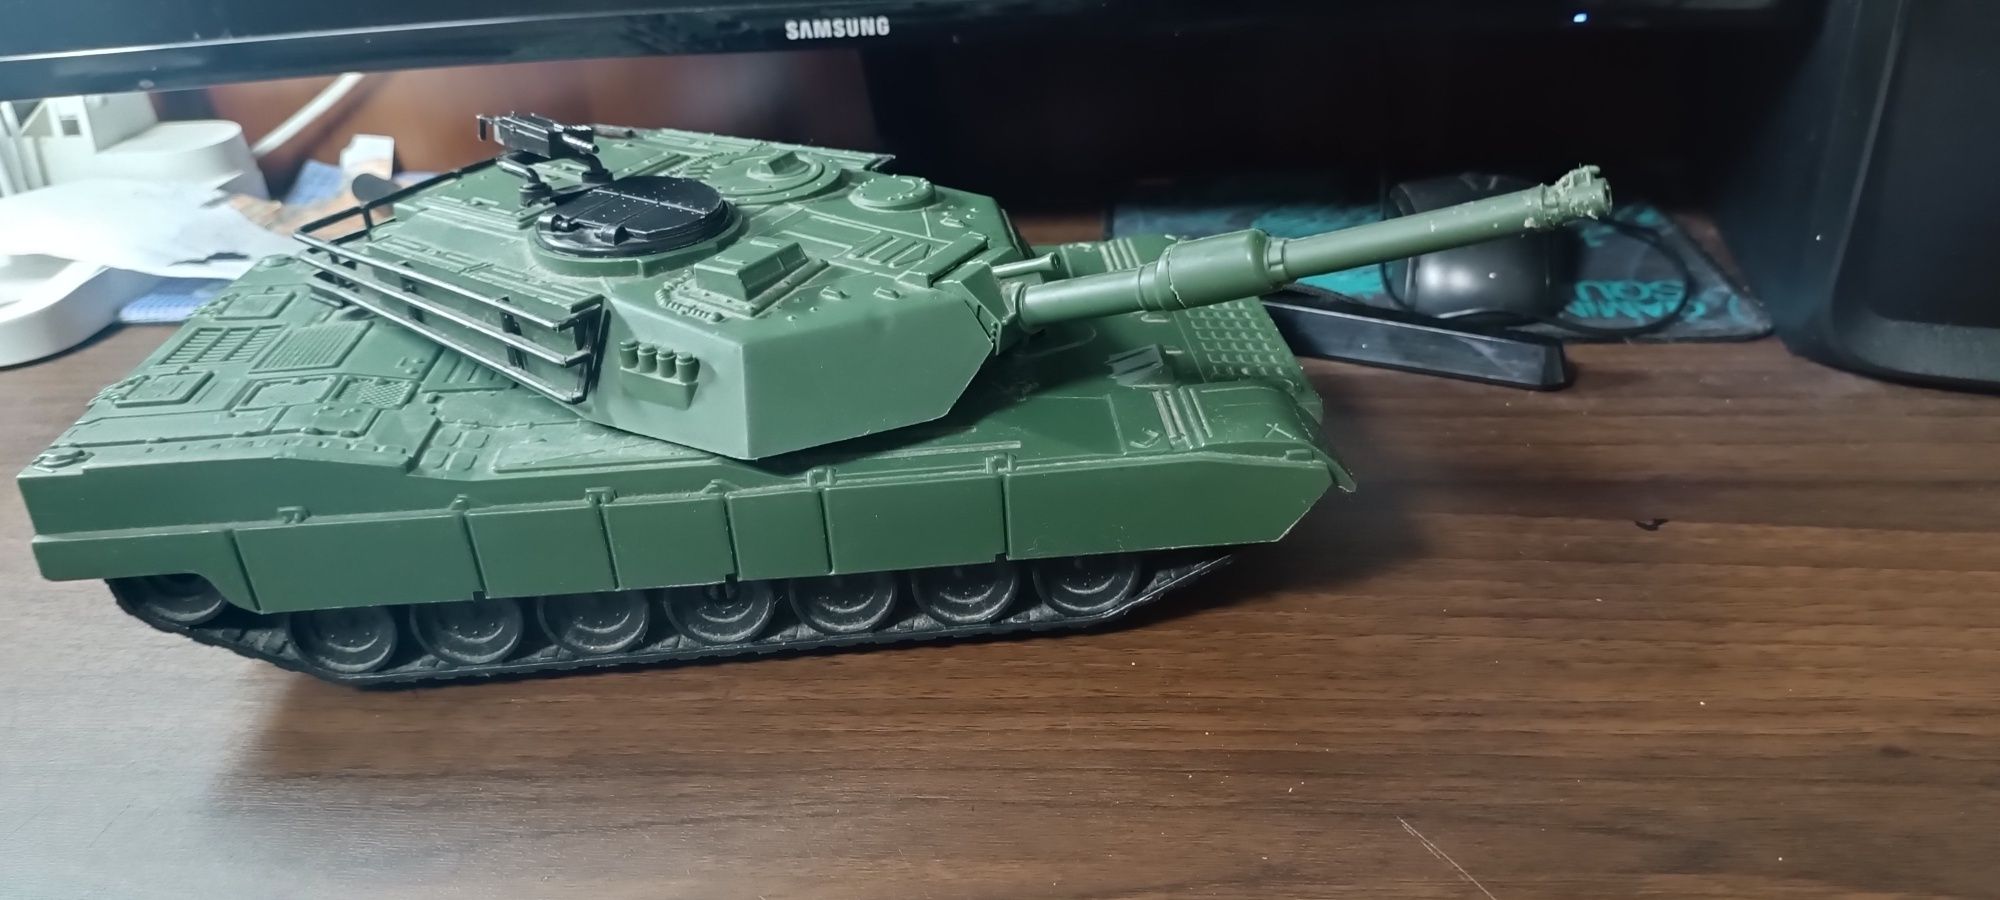 Продам игрушечный большой танк